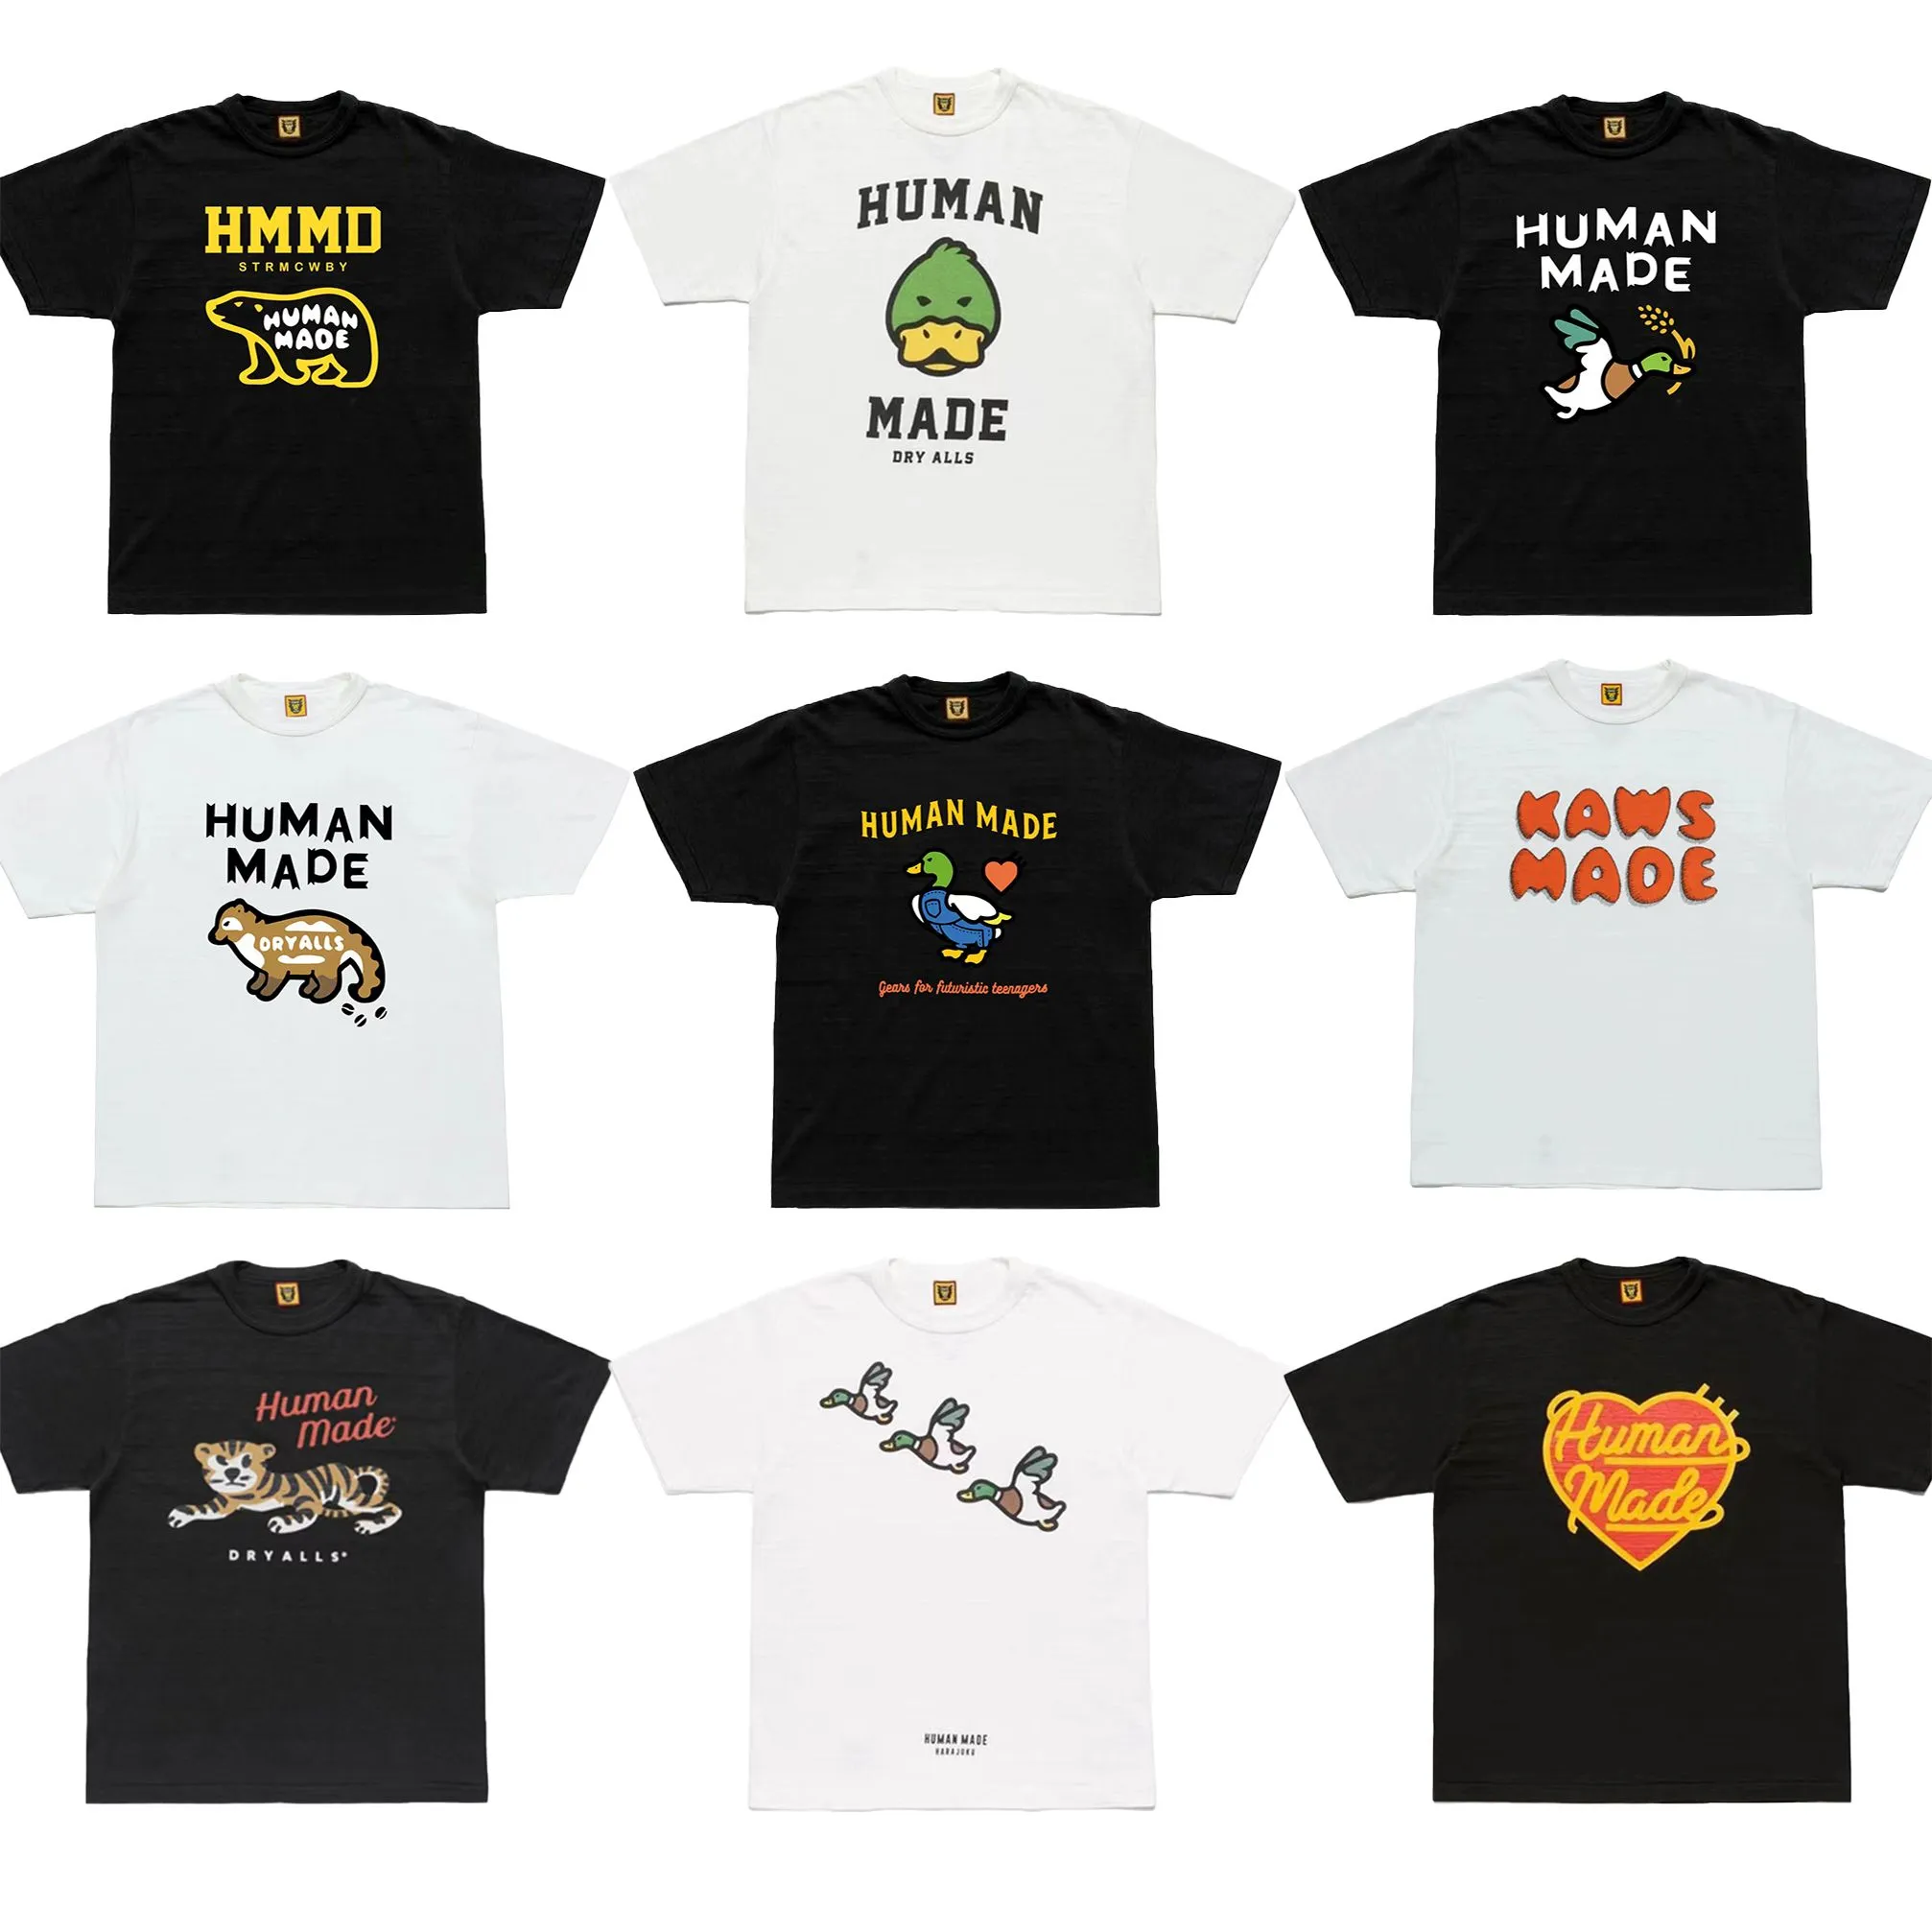 Human Made T-shirt Graphic Tees Men Women Summer Slub Cotton t shirt Clothes Harajuku Streetwear tshirt Hip Hop Gym Clothing X1214 li